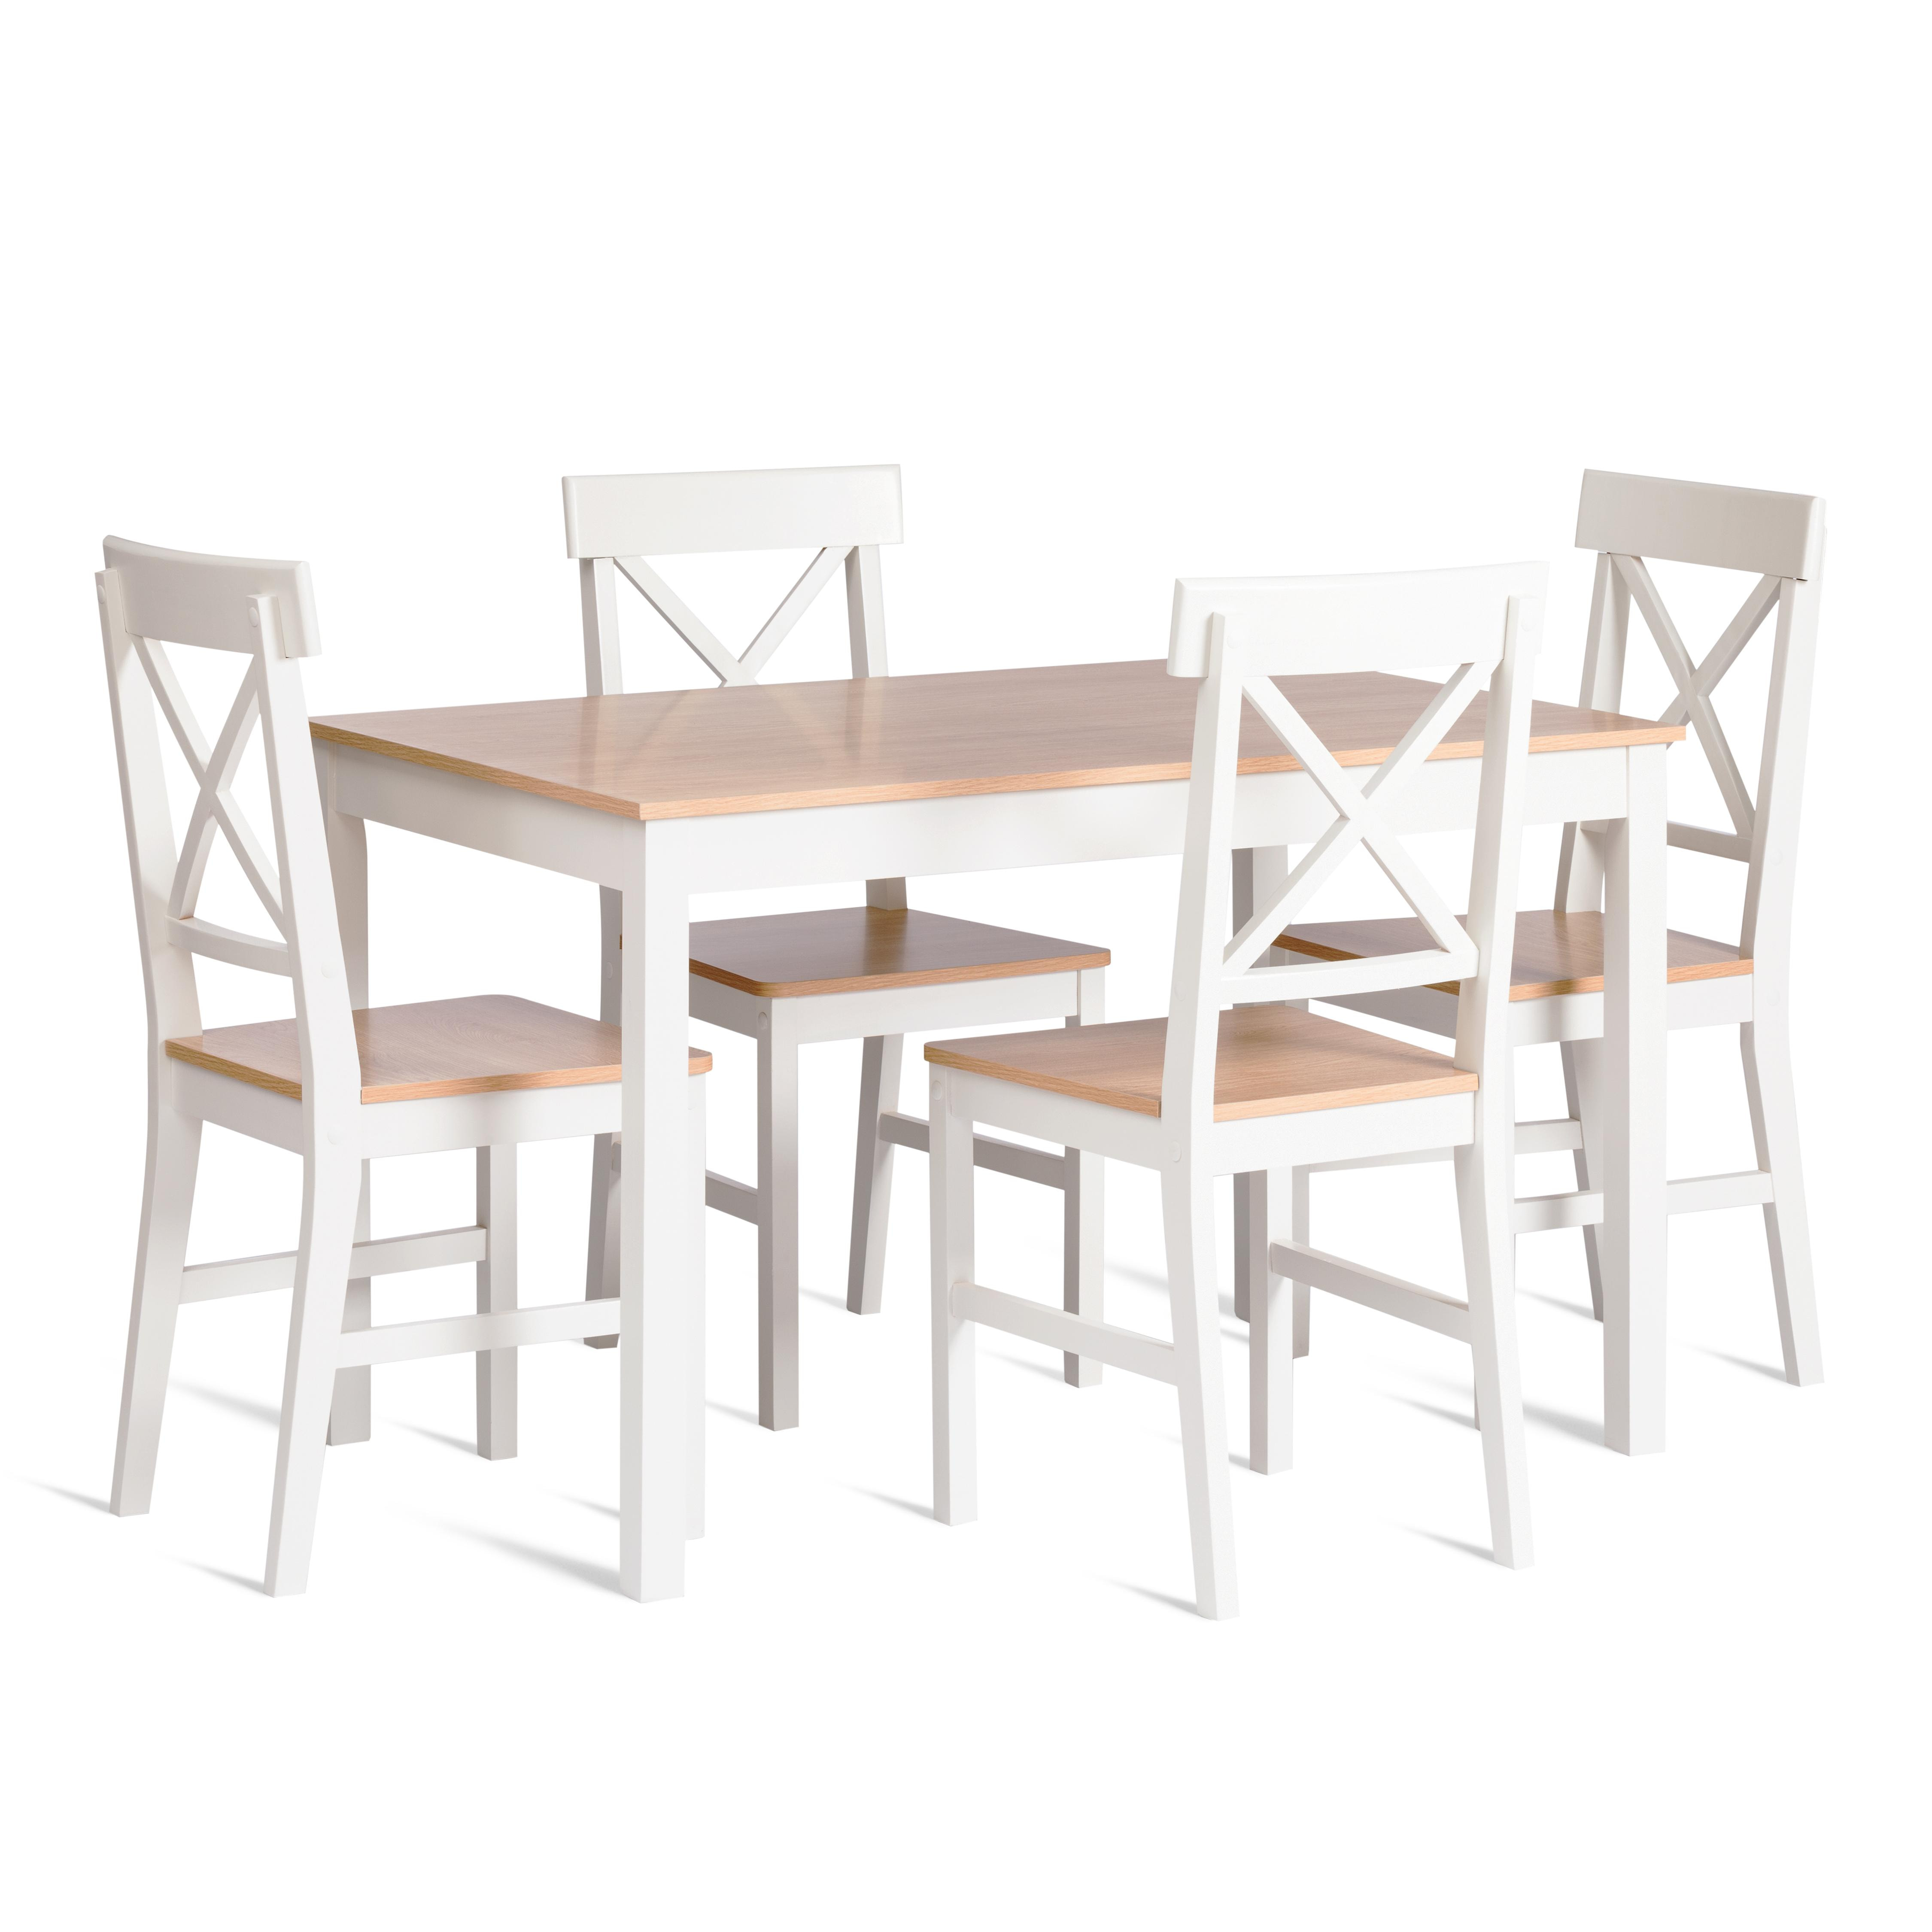 Обеденный комплект Хадсон (стол + 4 стула)/ Hudson Dining Set (mod.0103)